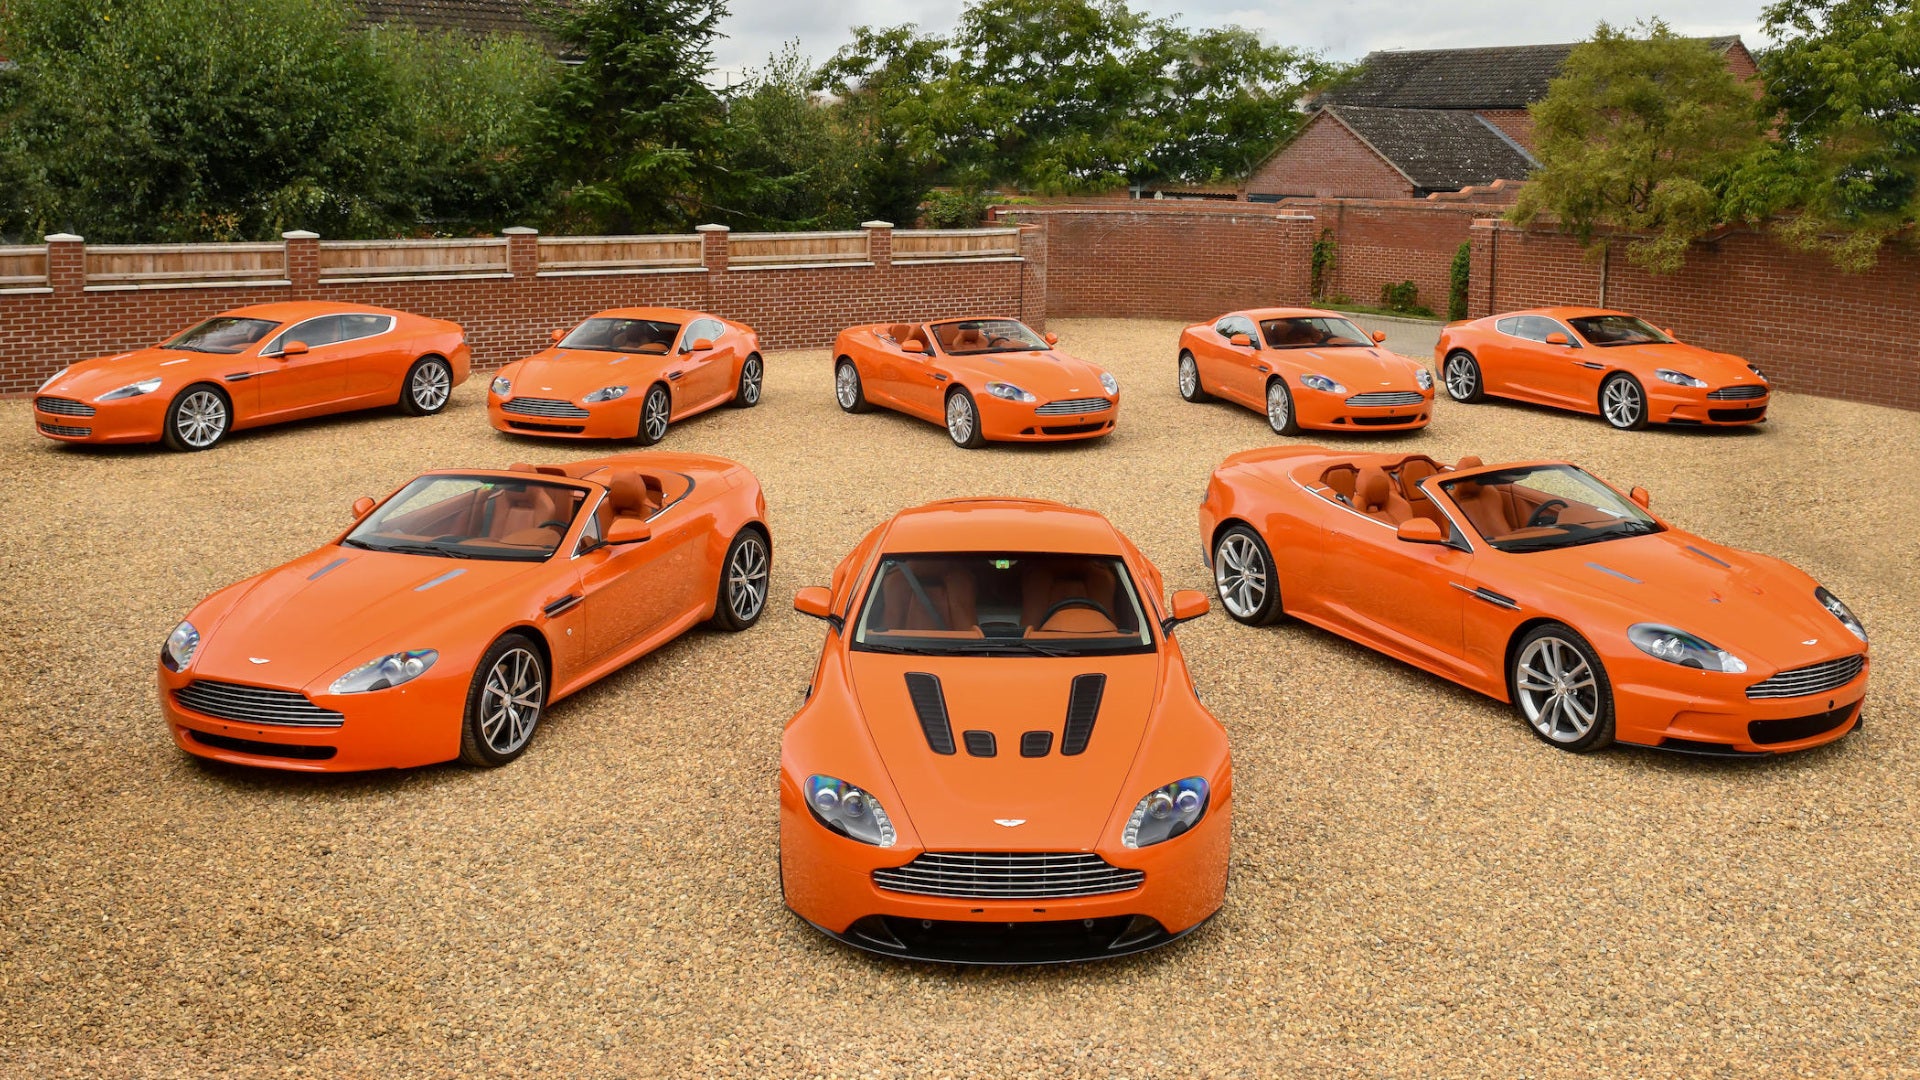 De Orange Aston Martin-collectie is de pittige veilinghit van dit najaar